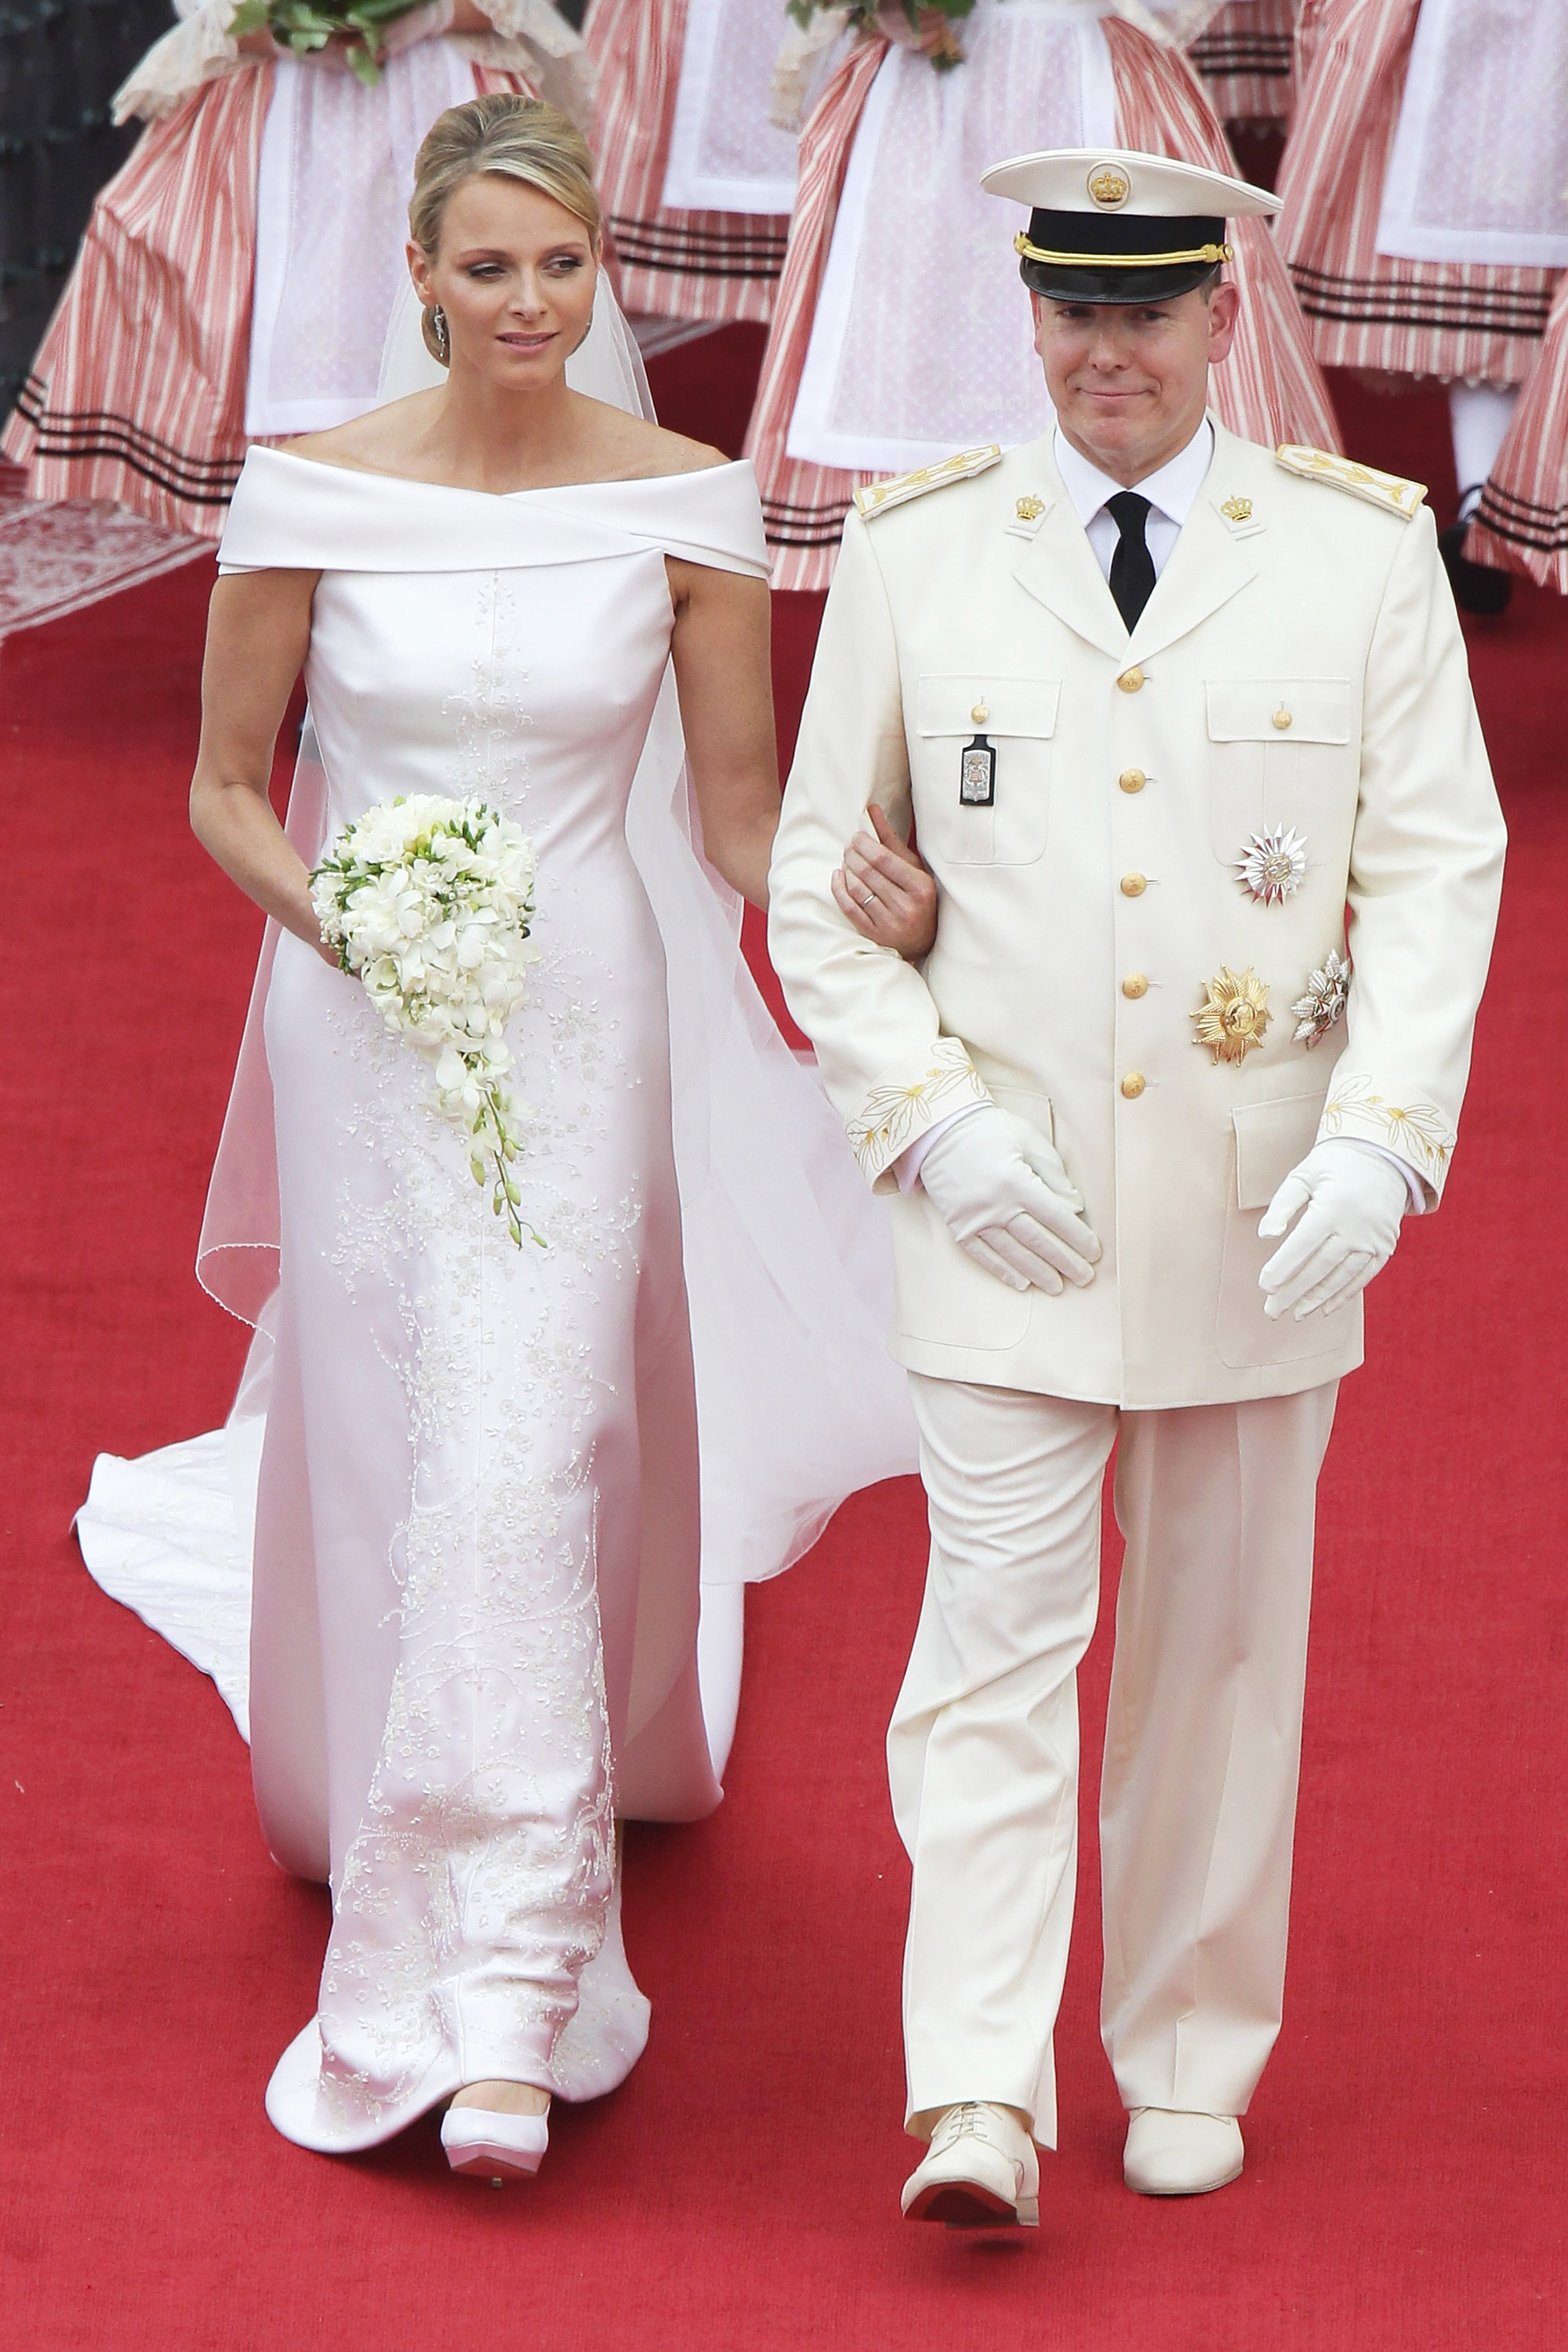 MONACO - 02. JULI: Prins Albert II af Monaco og prinsesse Charlene af Monaco forlader deres religiøse bryllupsceremoni i hovedgården ved Prinsens Palads den 2. juli 2011 i Monaco. Den romersk-katolske ceremoni følger det borgerlige bryllup, som blev afholdt i tronsalen i Prinspaladset i Monaco den 1. juli. Med sit ægteskab med statsoverhovedet for Fyrstendømmet Monaco er Charlene Wittstock blevet prinsessekonsort af Monaco og vinder titlen, prinsesse Charlene af Monaco. Fejringer, herunder koncerter og fyrværkeri, afholdes over flere dage, med deltagelse af en gæsteliste over globale berømtheder og statsoverhoveder. (Foto af Andreas Rentz/Getty Images) *** Lokal billedtekst *** Prins Albert II; Prinsesse Charlene